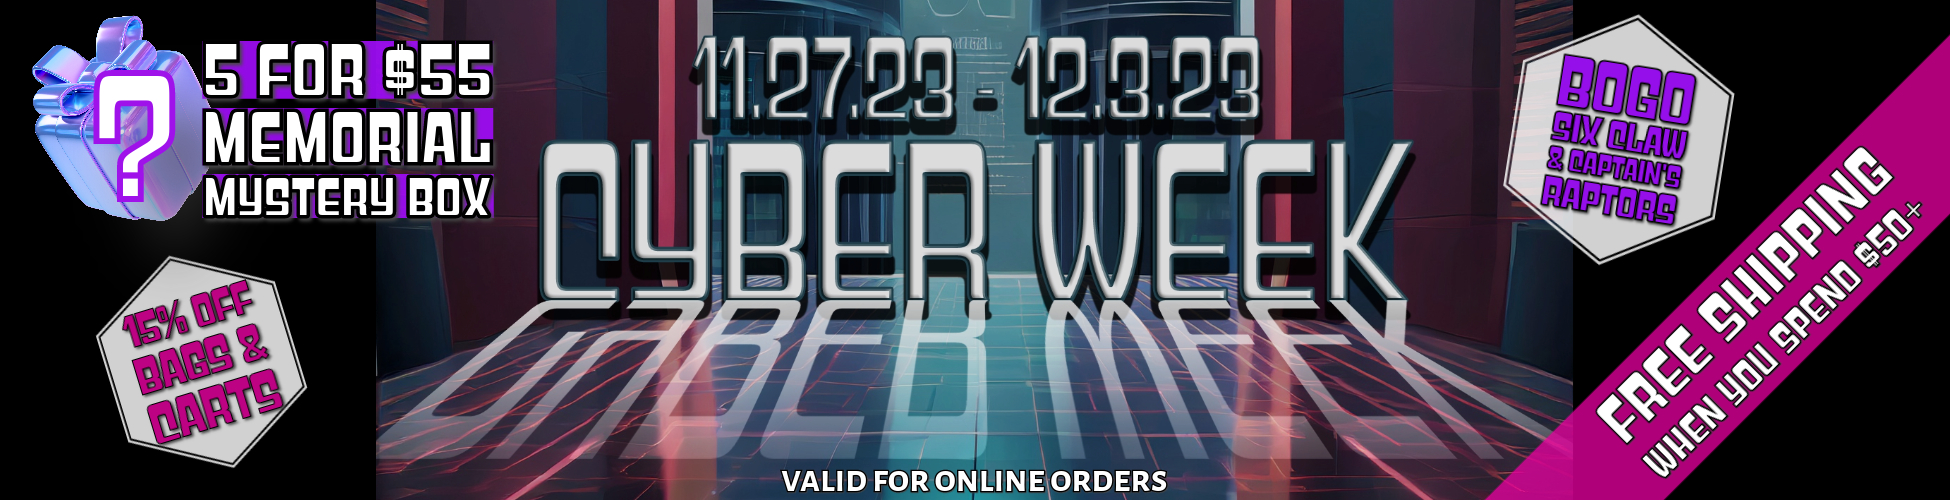 Cyber Week Deals Start Monday, November 27th!